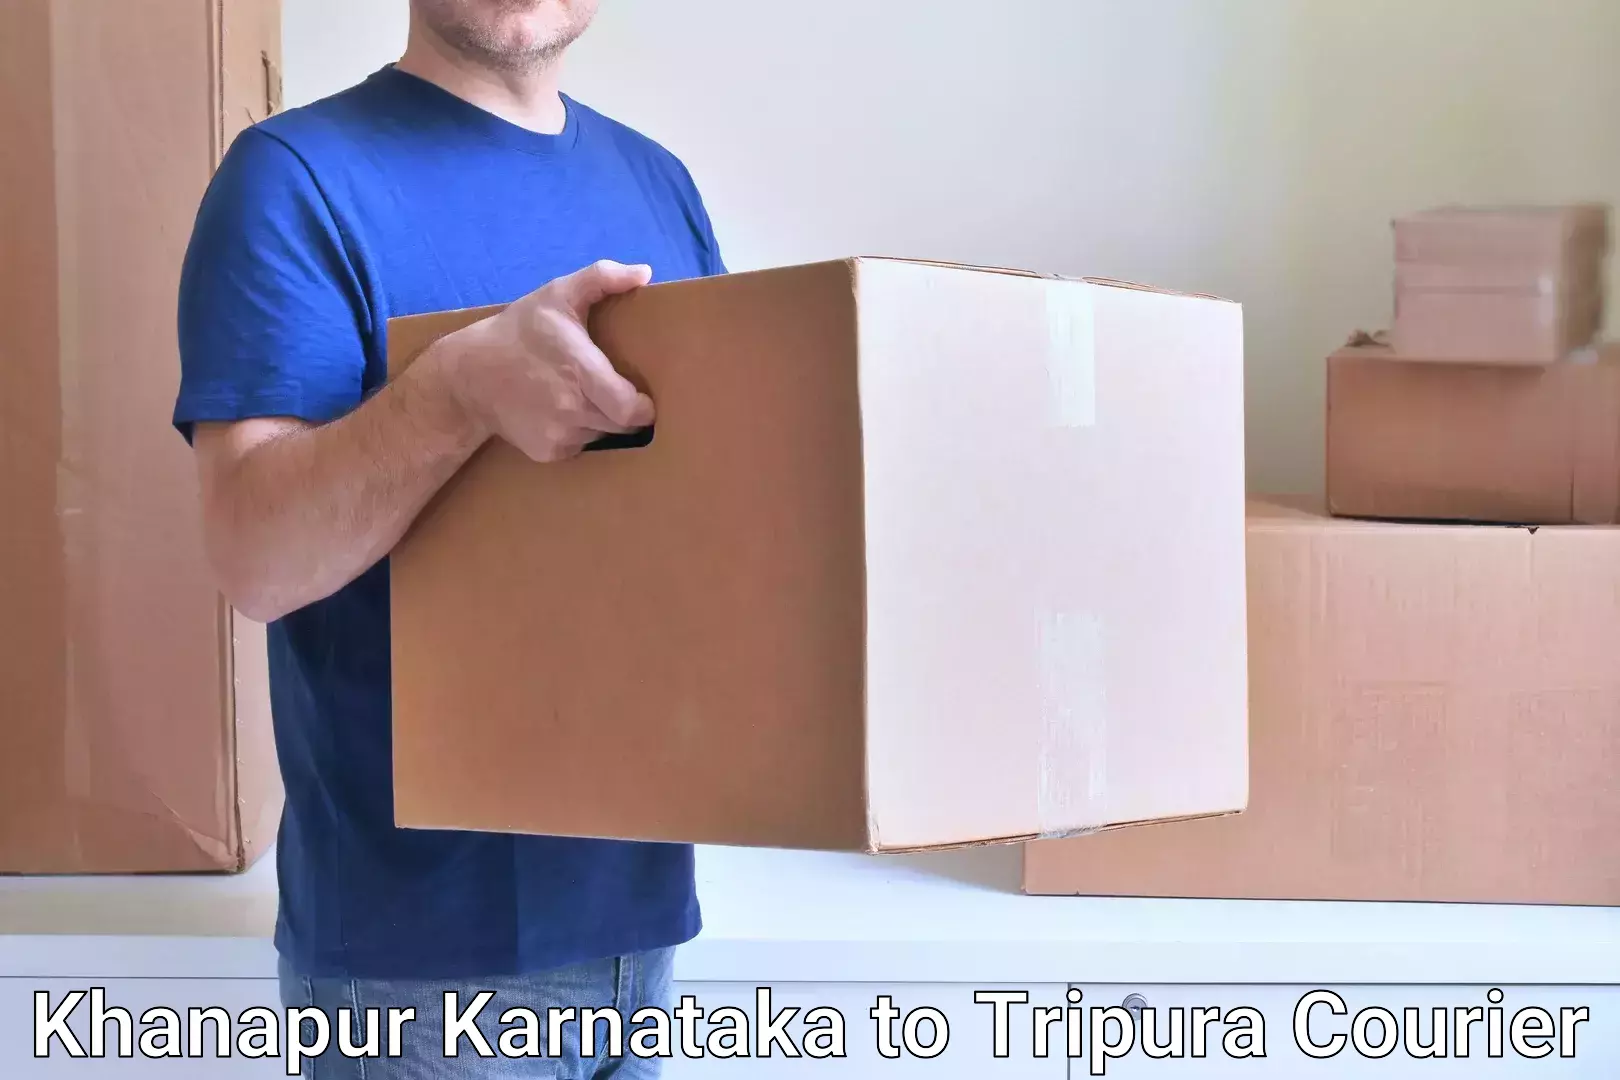 Efficient freight service Khanapur Karnataka to Dharmanagar